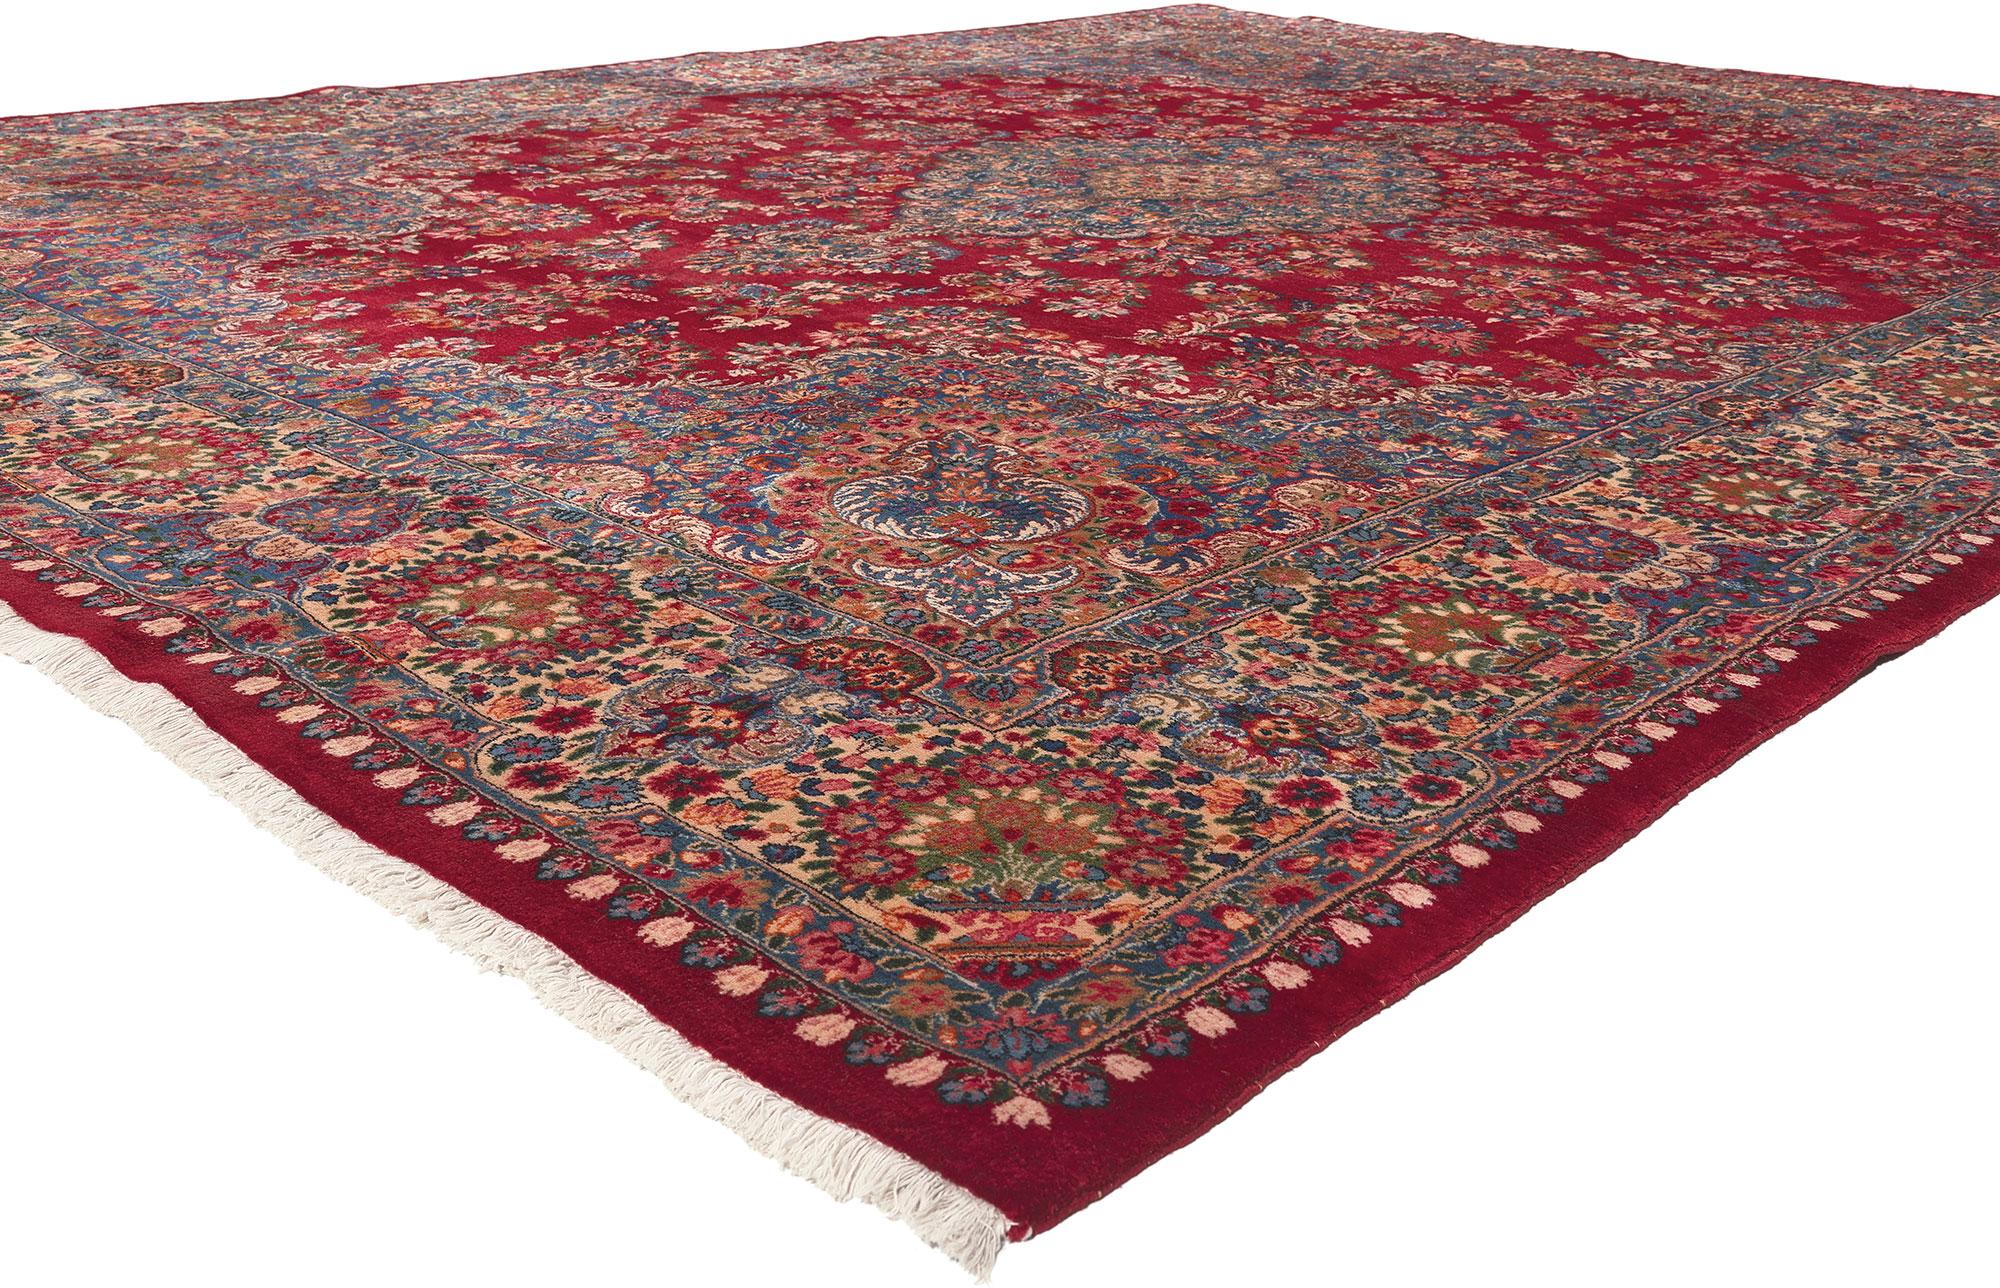 77718 Vintage Persisch Kerman Teppich, 10'00 x 12'10.
Klassische Eleganz trifft auf königlichen Charme in diesem persischen Vintage Kerman  Teppich. Das komplizierte Blumenmuster und die raffinierte Farbpalette, die in dieses Stück eingewebt sind,